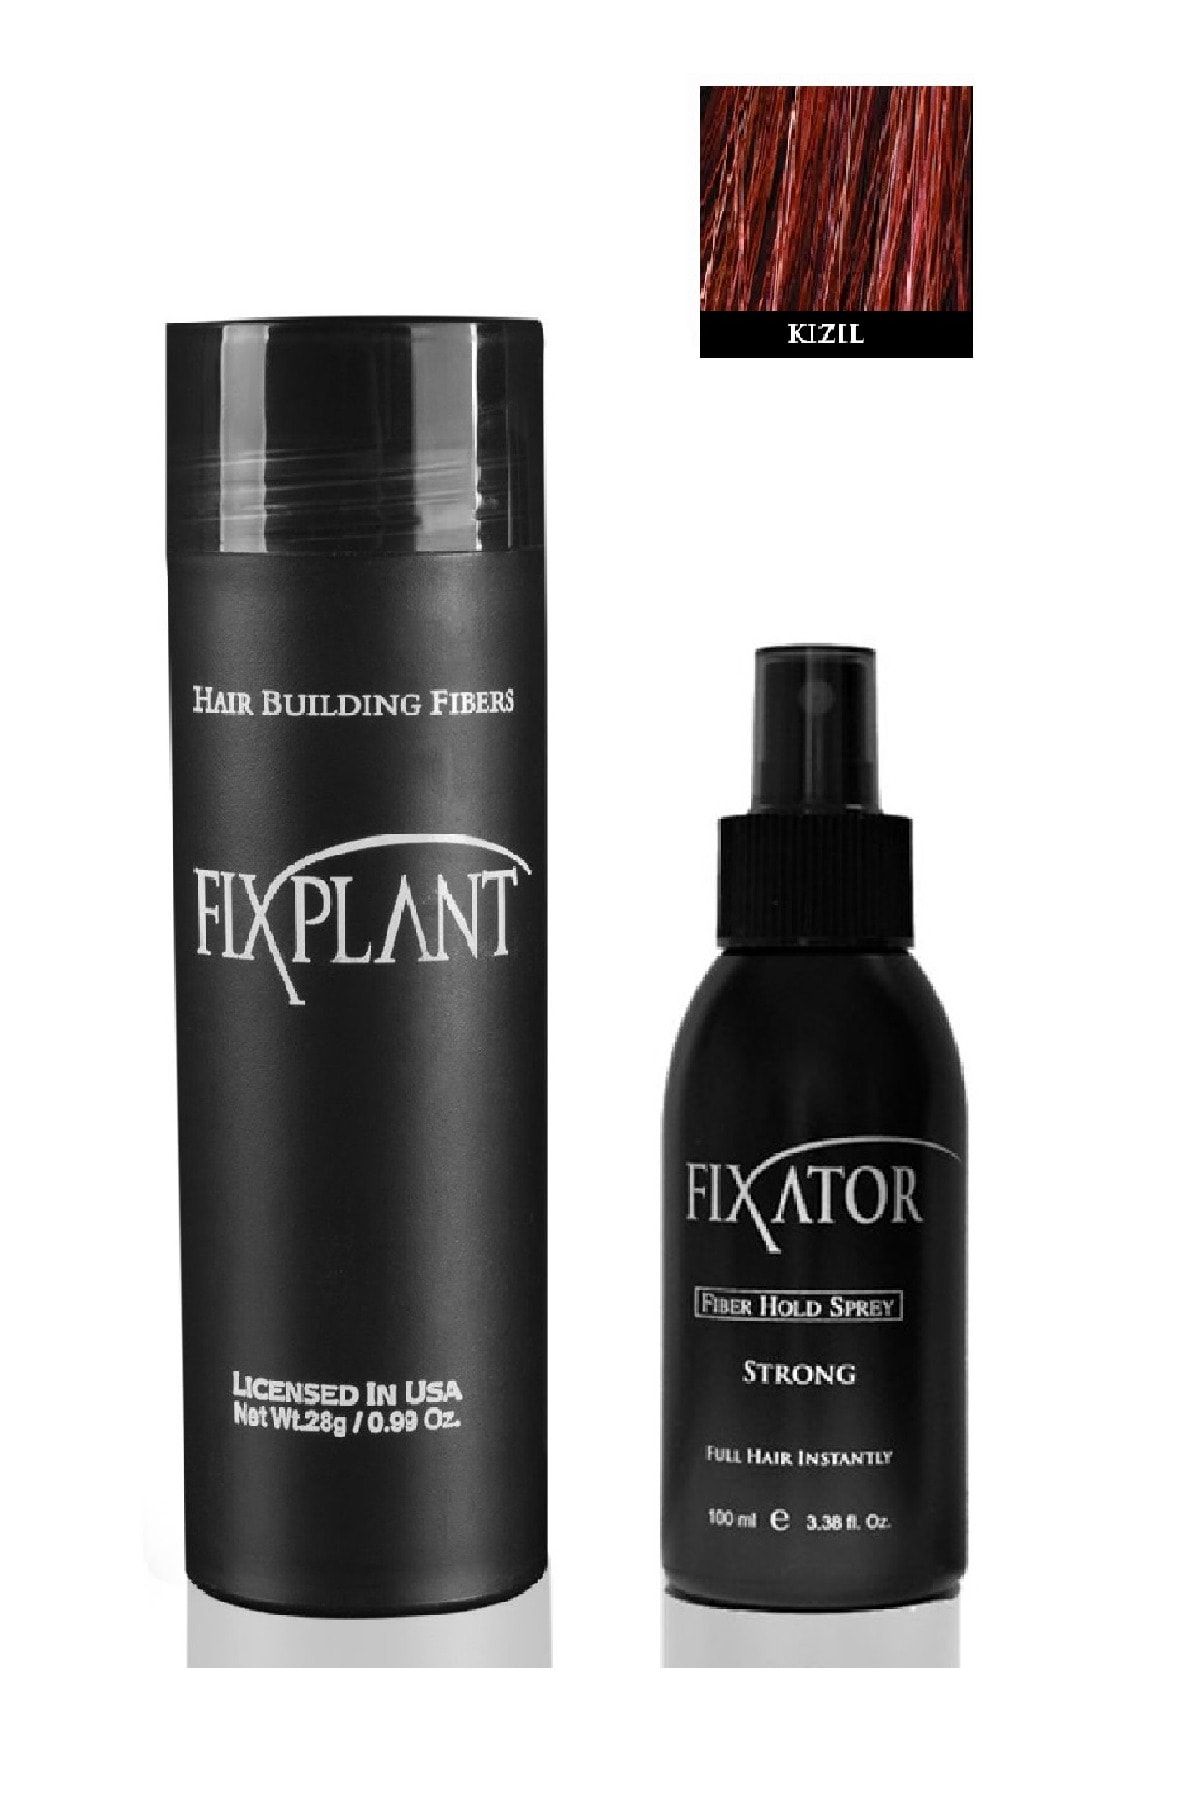 FIXPLANT Saç Dolgunlaştırıcı Saç Tozu Topik 28 gr Fixator Sabitleyici Sprey 100 ml -1 Set Kızıl